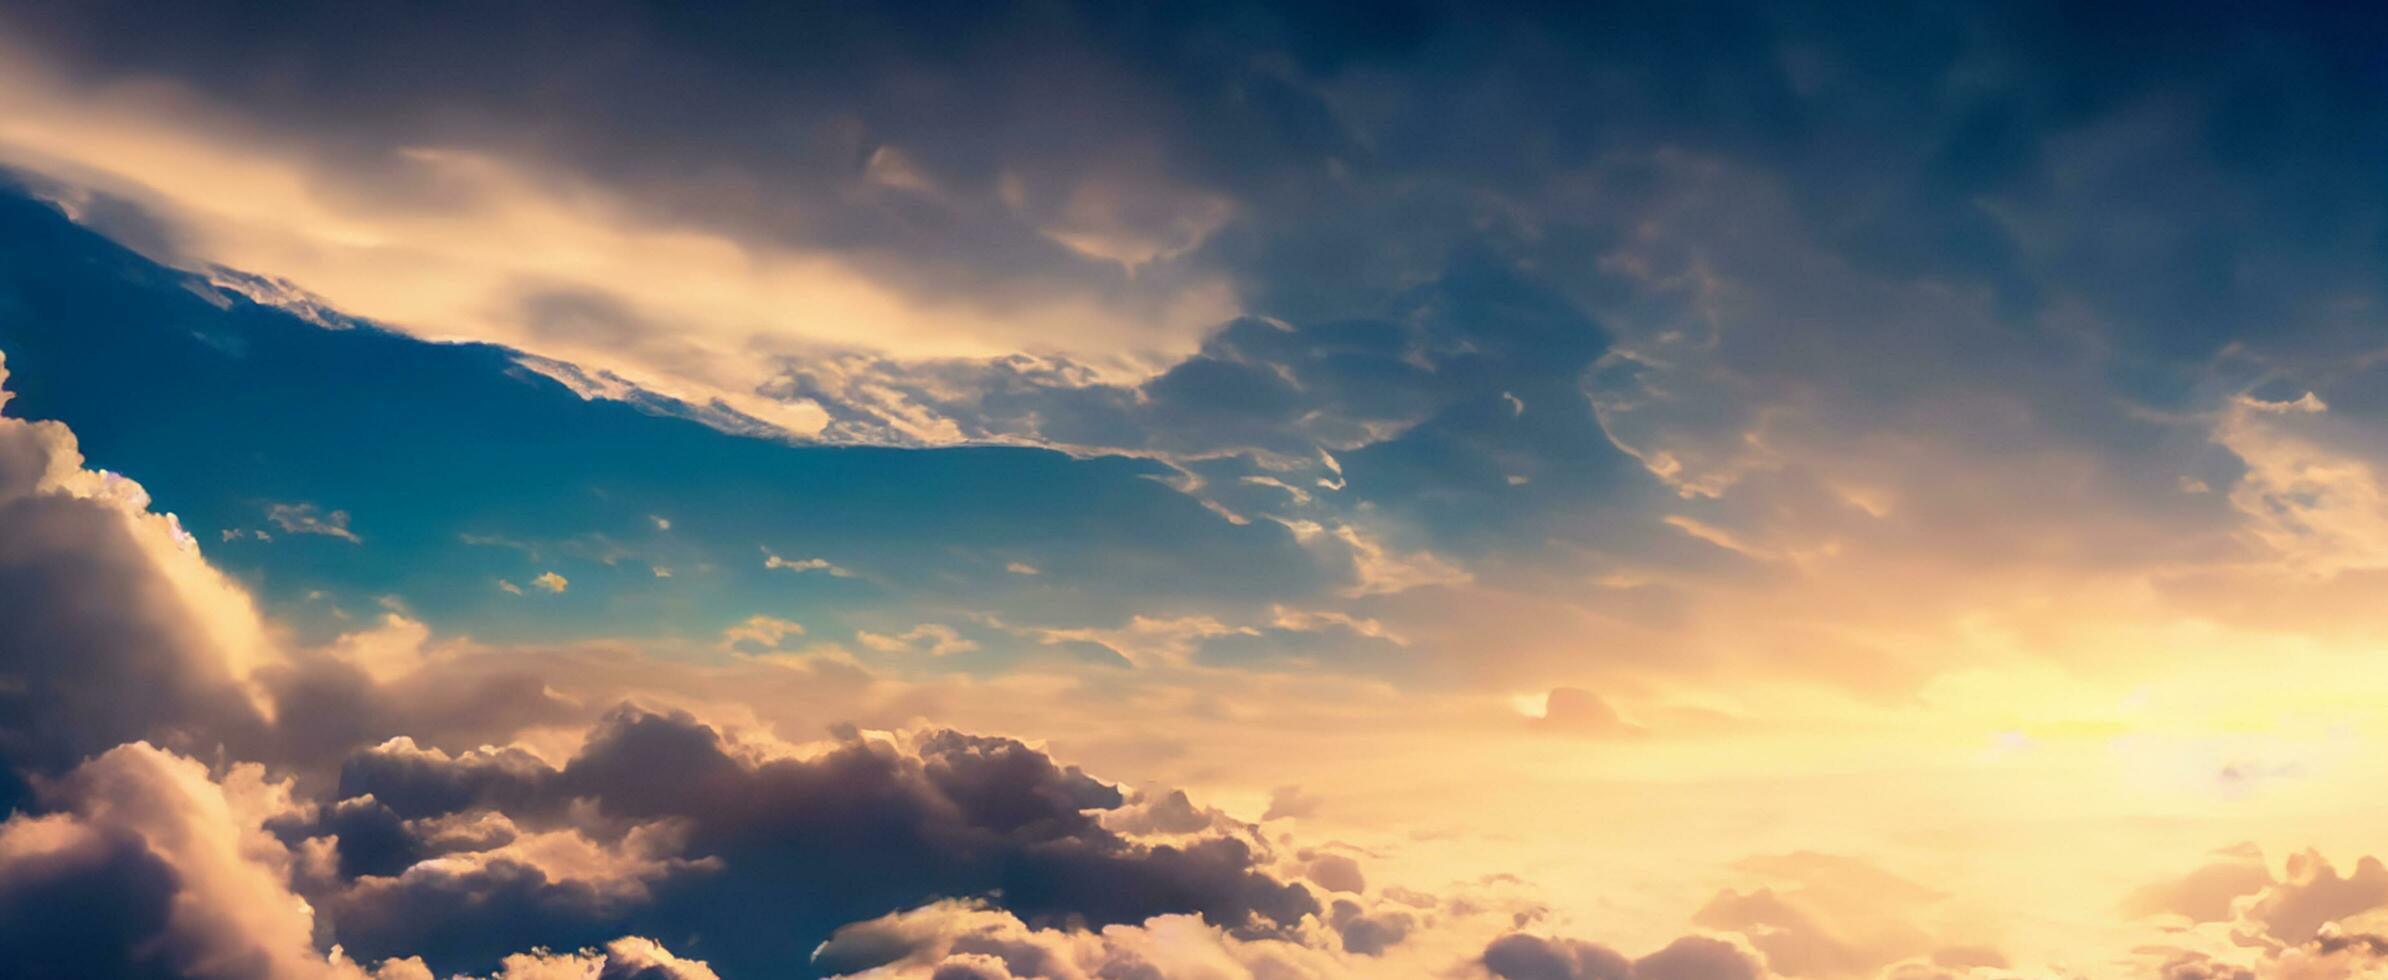 lucht atmosfeer stratosfeer wolken in de lucht troposfeer mesosfeer ionosfeer exosfeer niveau van hoogte bovenstaand vliegtuigen foto